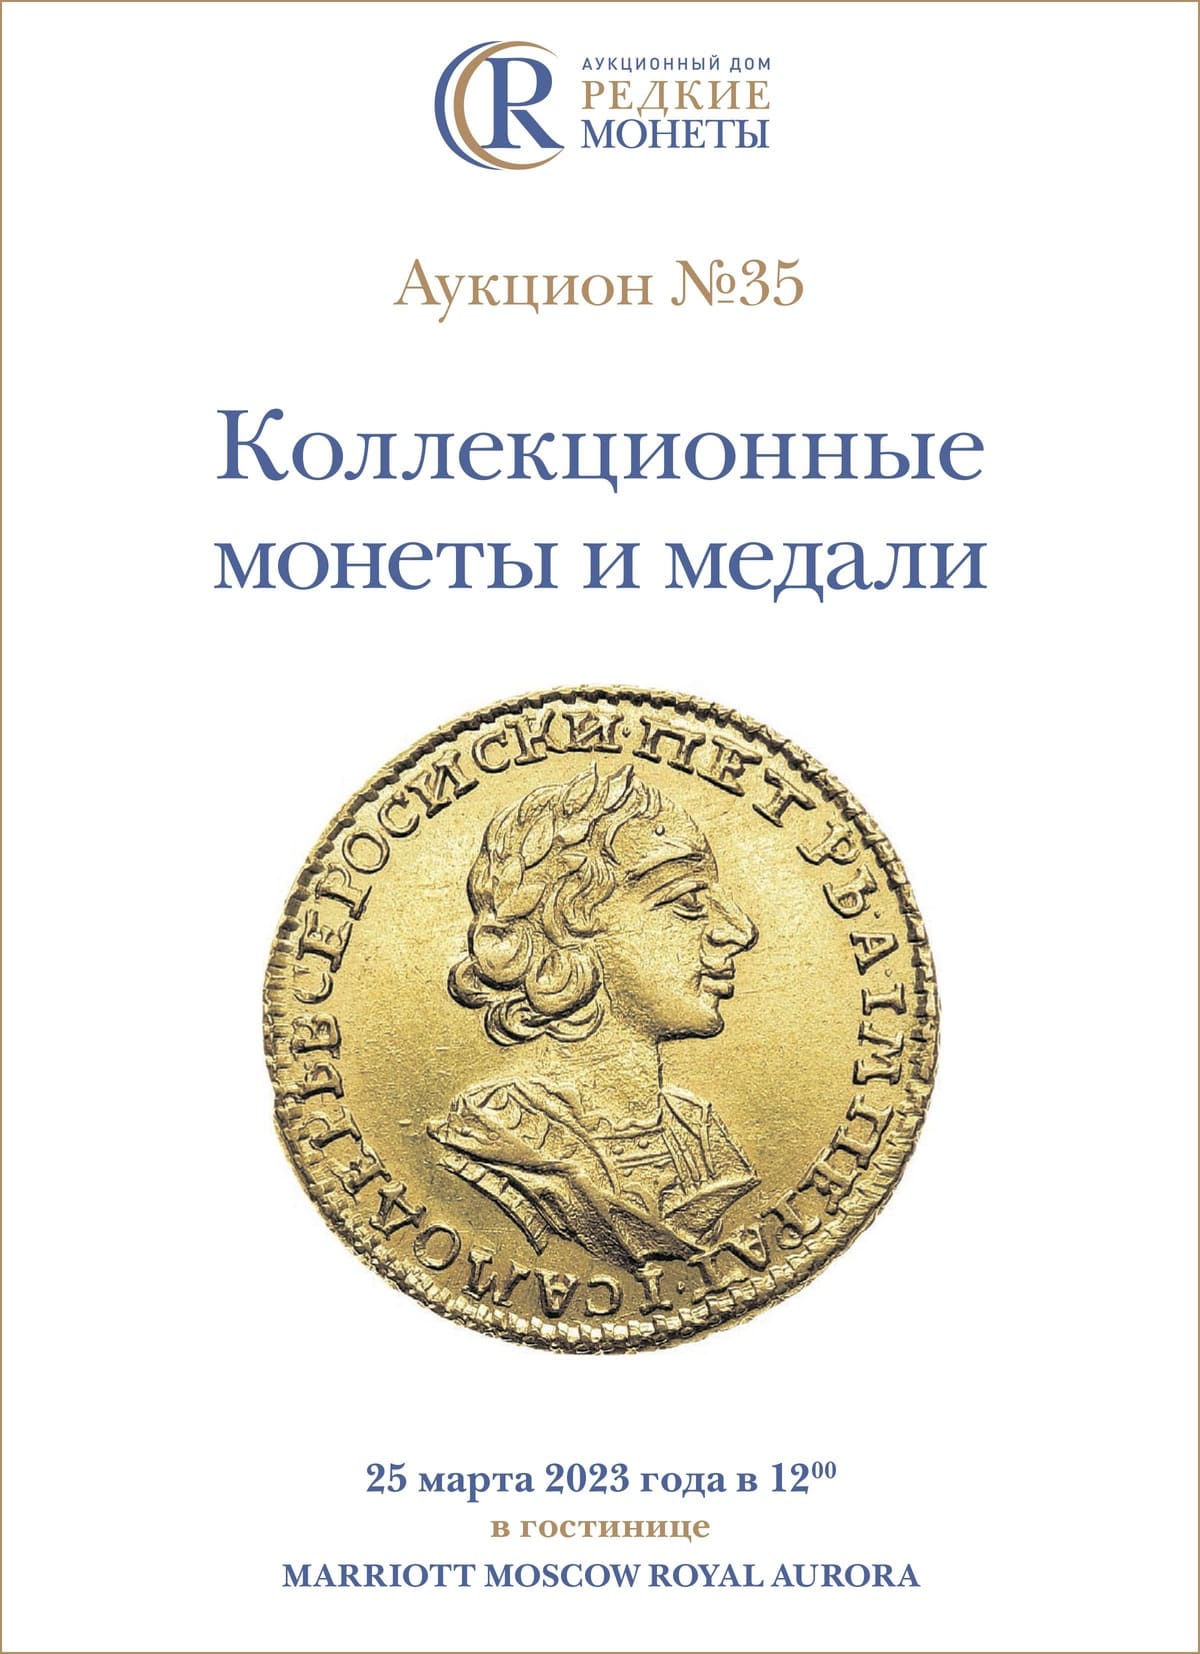 Артикул №23-05283, Коллекционные монеты и медали, Аукцион №35, 25 марта 2023 года.